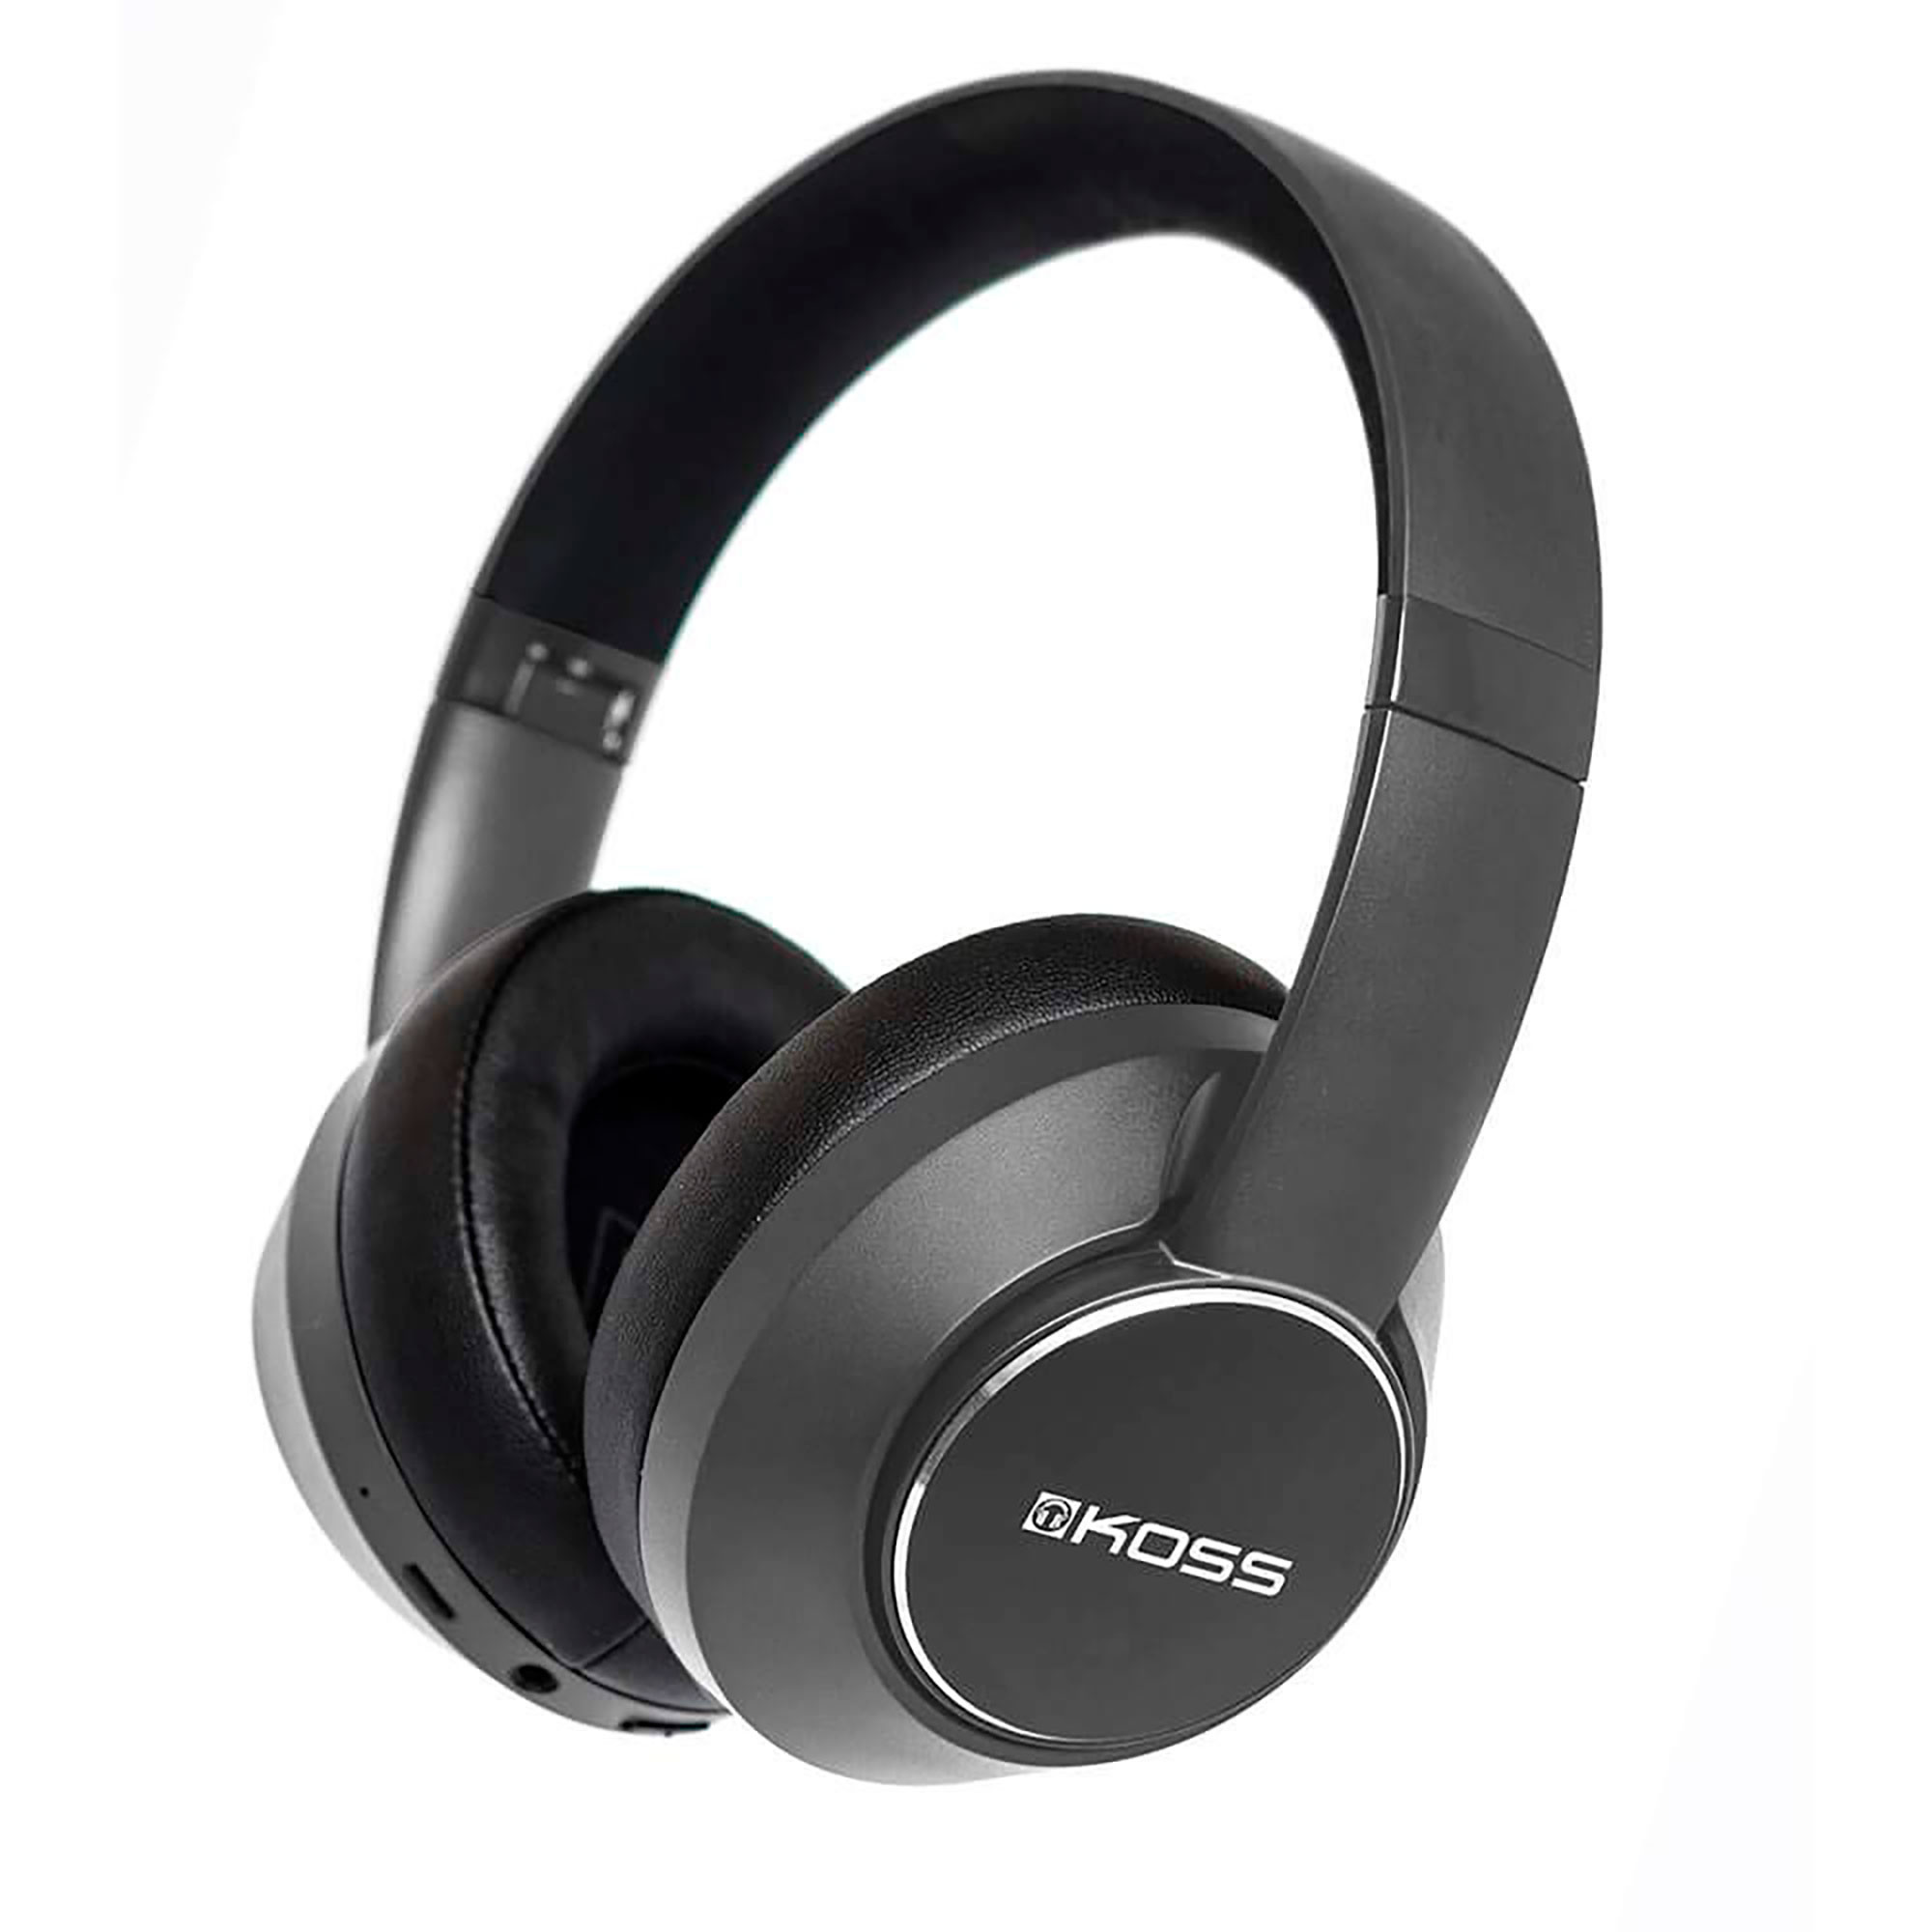  Koss KSC35 Auriculares inalámbricos Bluetooth con clip